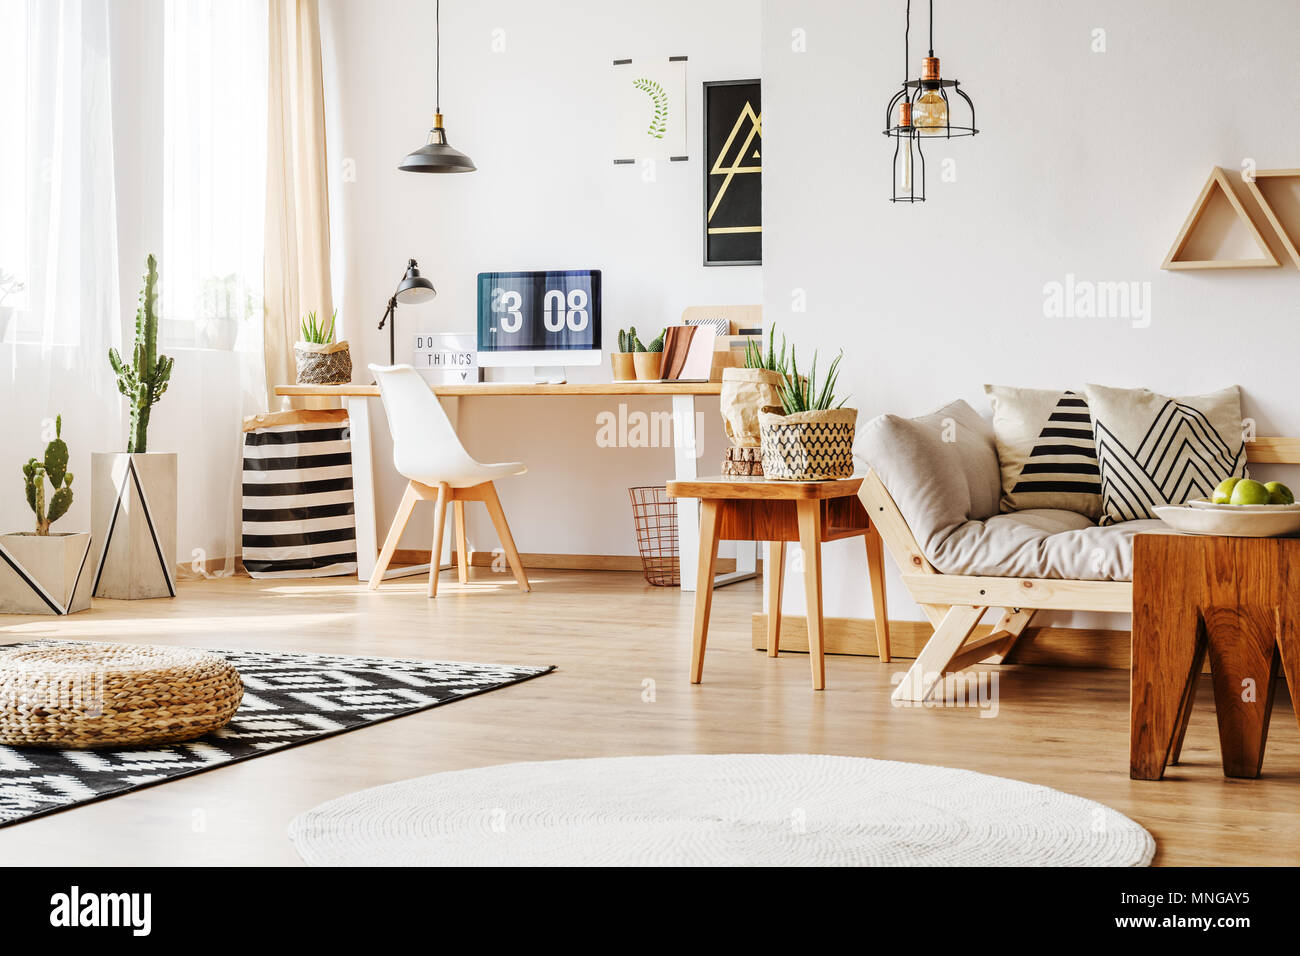 Interior Design Idee Fur Home Arbeitsbereich Mit Weissen